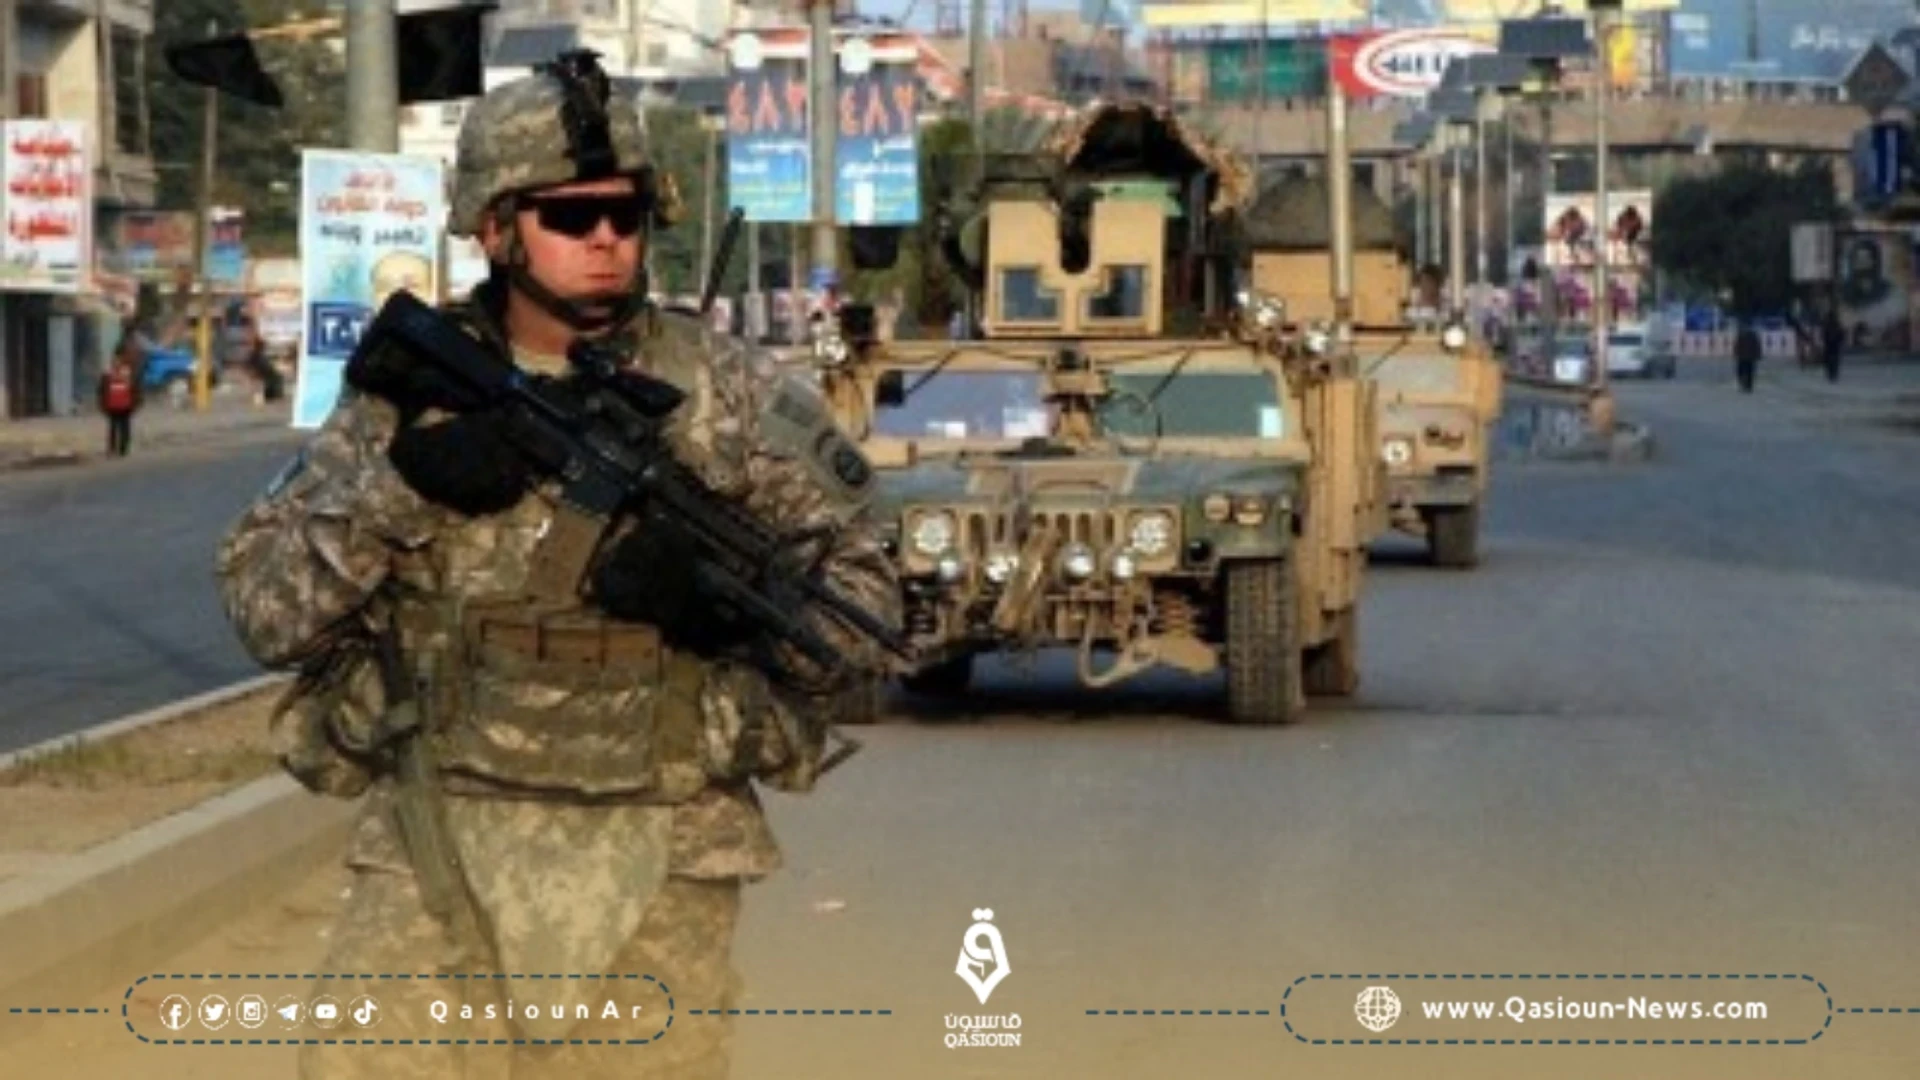 العراق: محادثات إنهاء التحالف من الممكن أن تستمر بعد الانتخابات